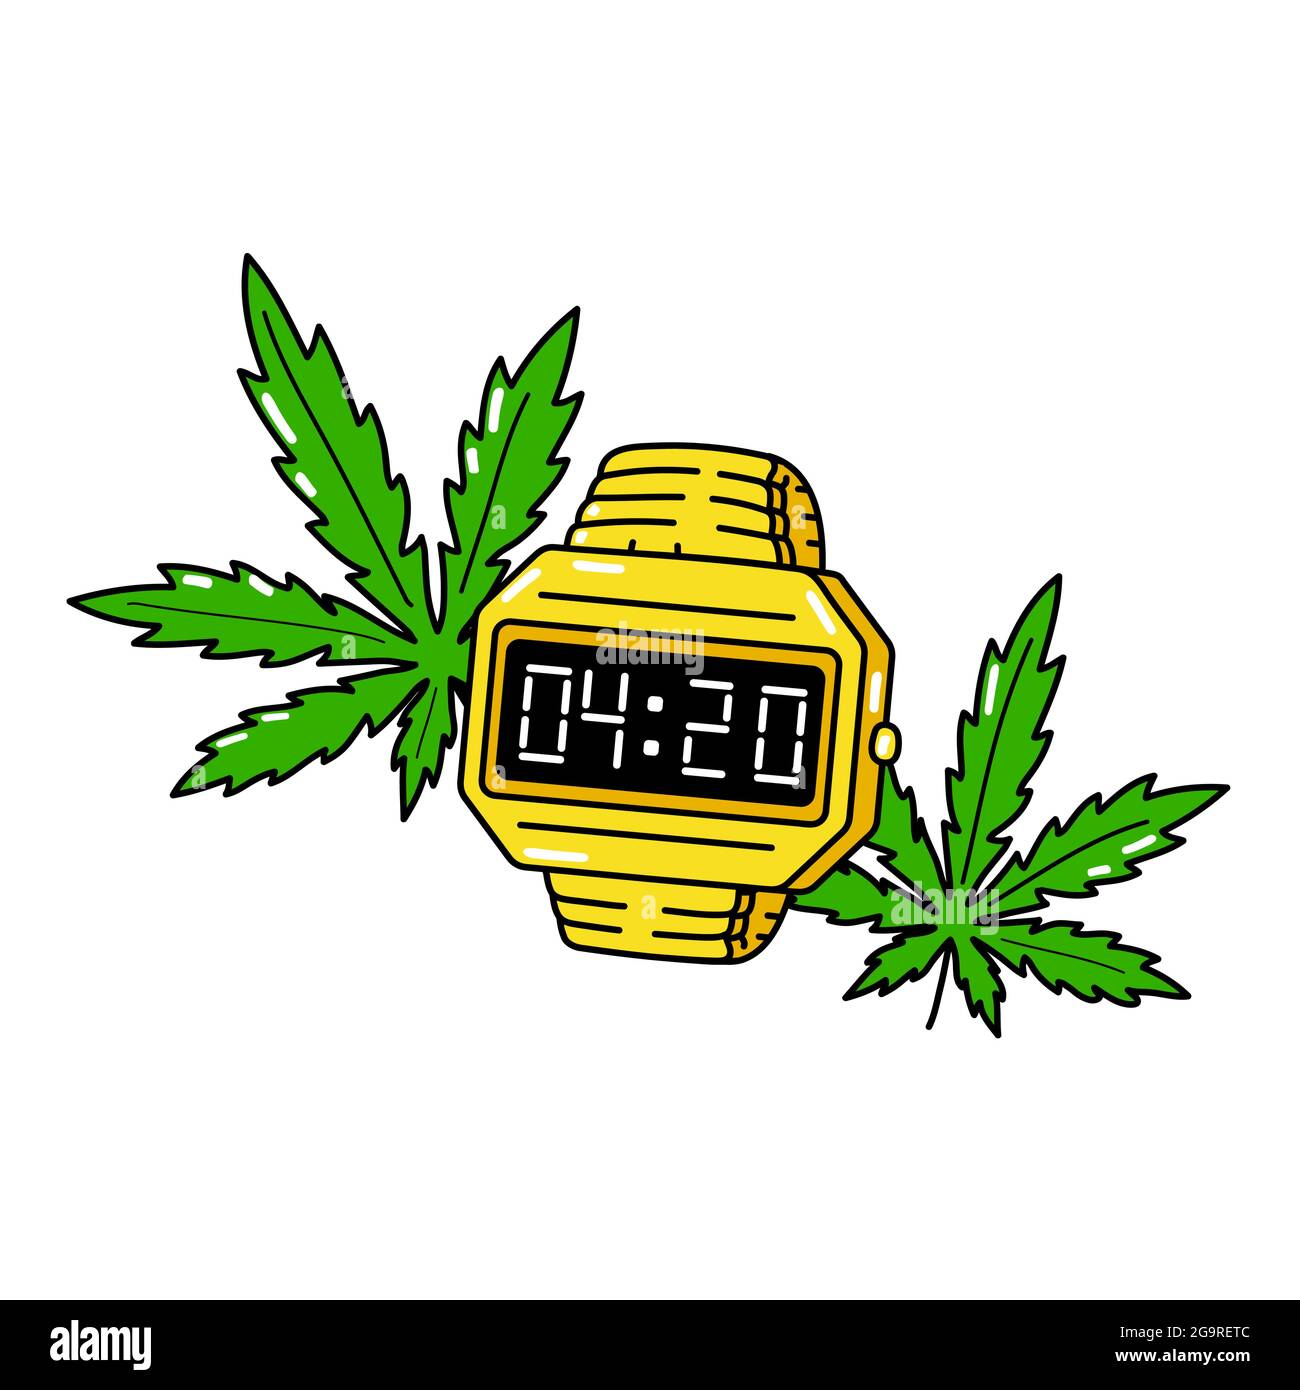 4:20 Mal auf einer goldenen elektronischen Uhr und Cannabis-Blätter. Vektor Cartoon Illustration Design. Isoliert auf weißem Hintergrund. 420 Uhr, Unkraut, Cannabis, grüner Blattdruck für T-Shirt, Posterkonzept Stock Vektor